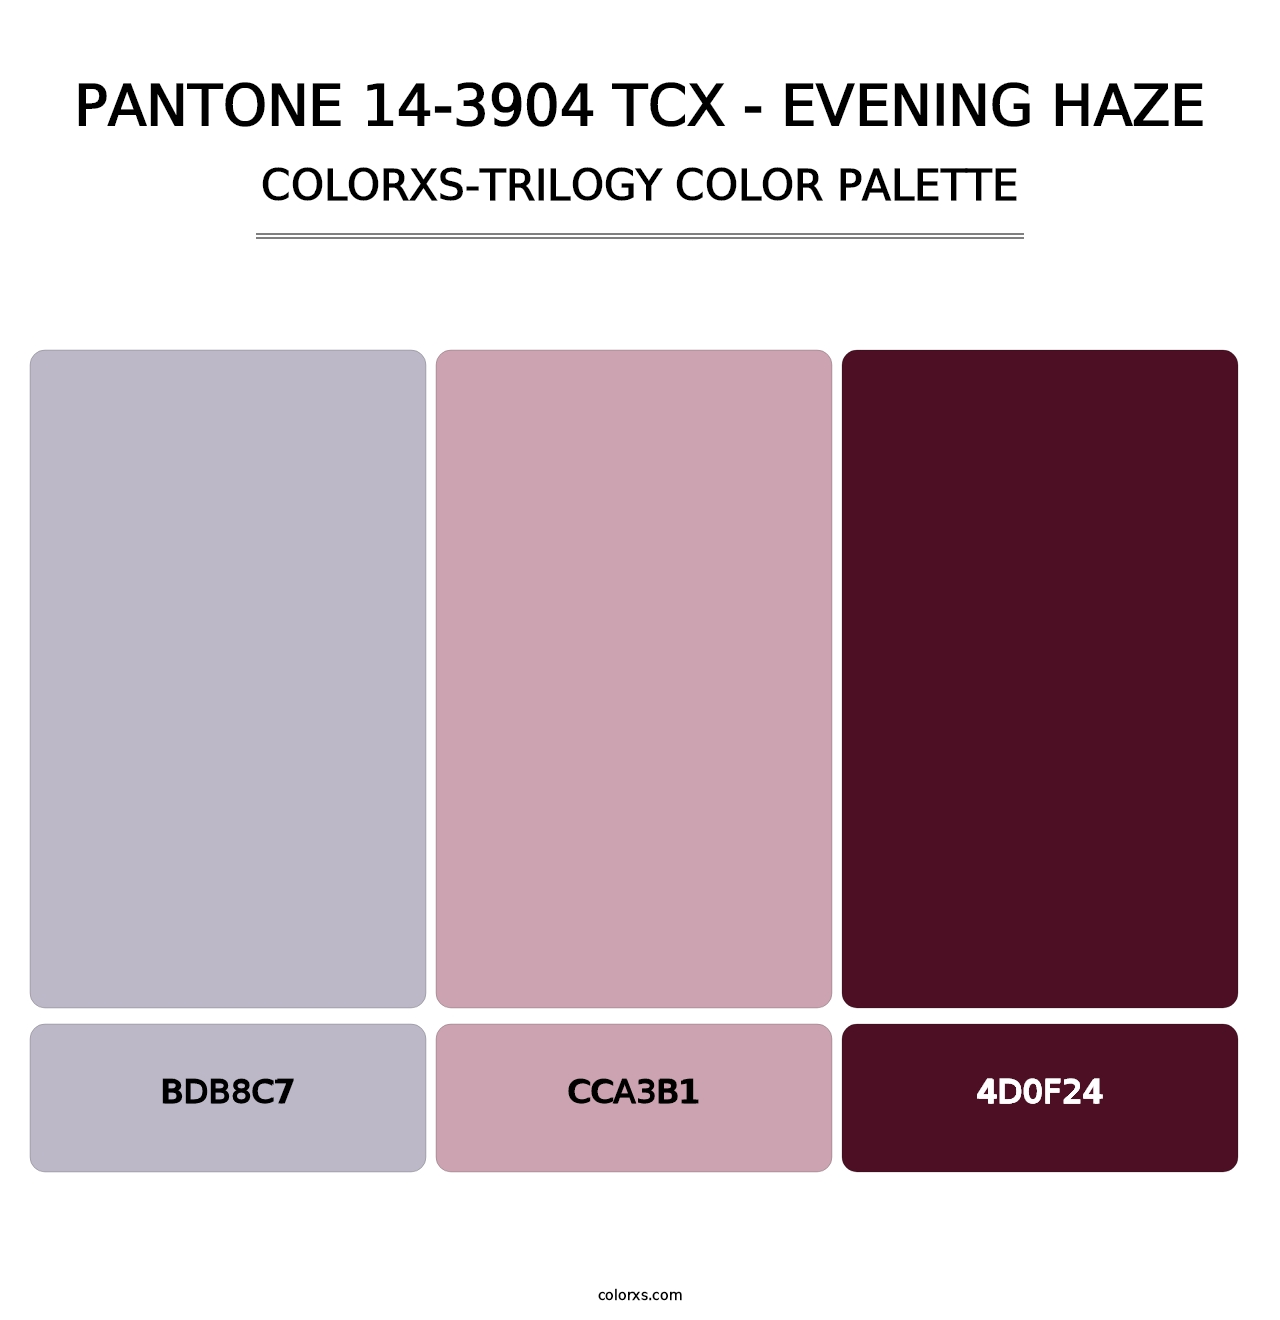 PANTONE 14-3904 TCX - Evening Haze - Colorxs Trilogy Palette